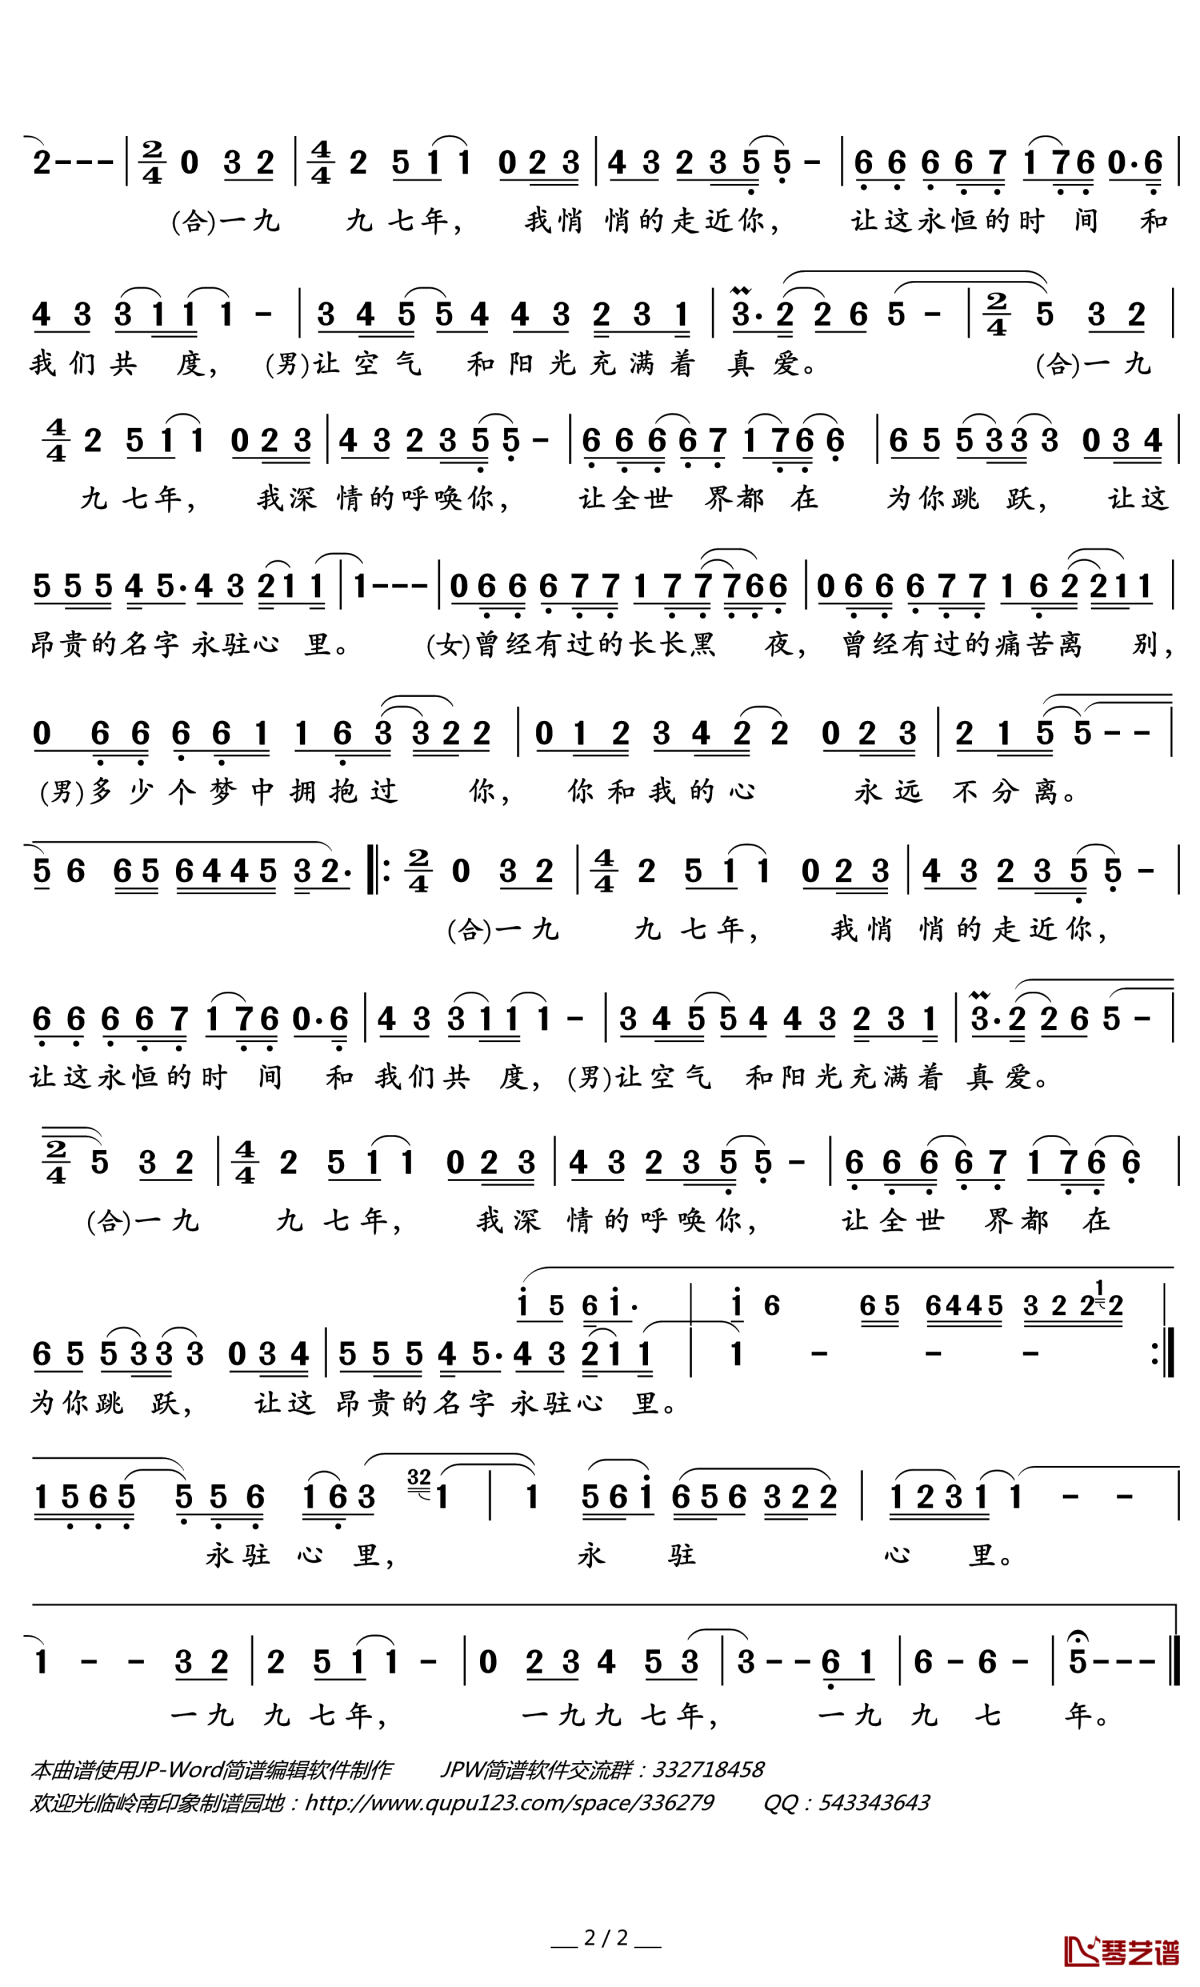 思念-毛阿敏双手简谱预览2-钢琴谱文件（五线谱、双手简谱、数字谱、Midi、PDF）免费下载